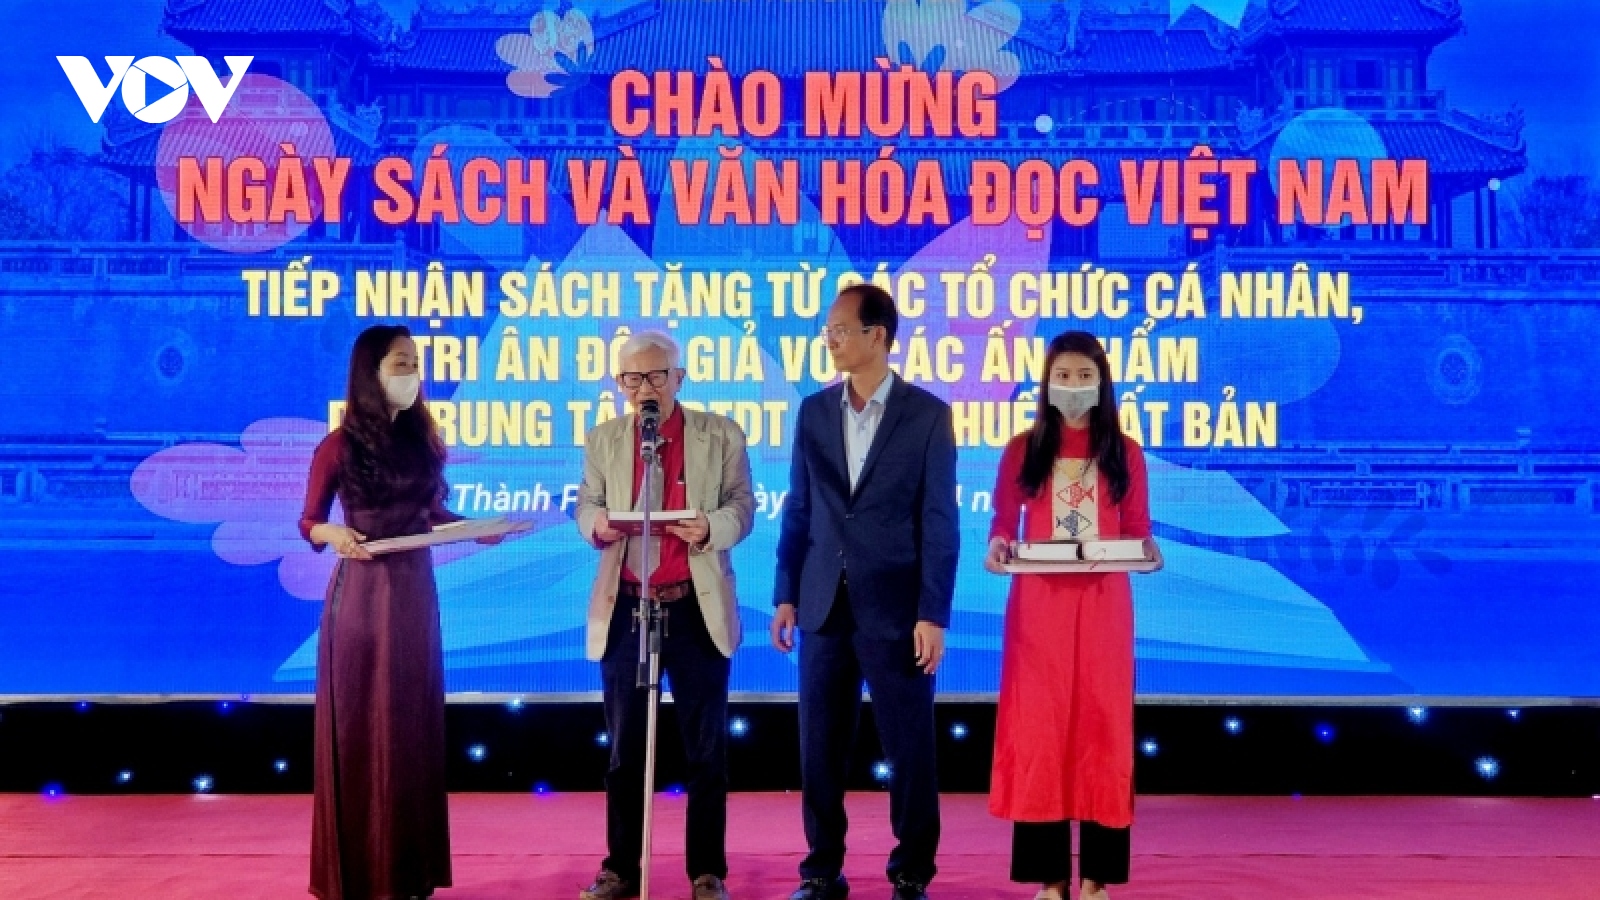  Khai mạc Ngày sách và Văn hóa đọc Việt Nam năm 2022 tại Thừa Thiên Huế